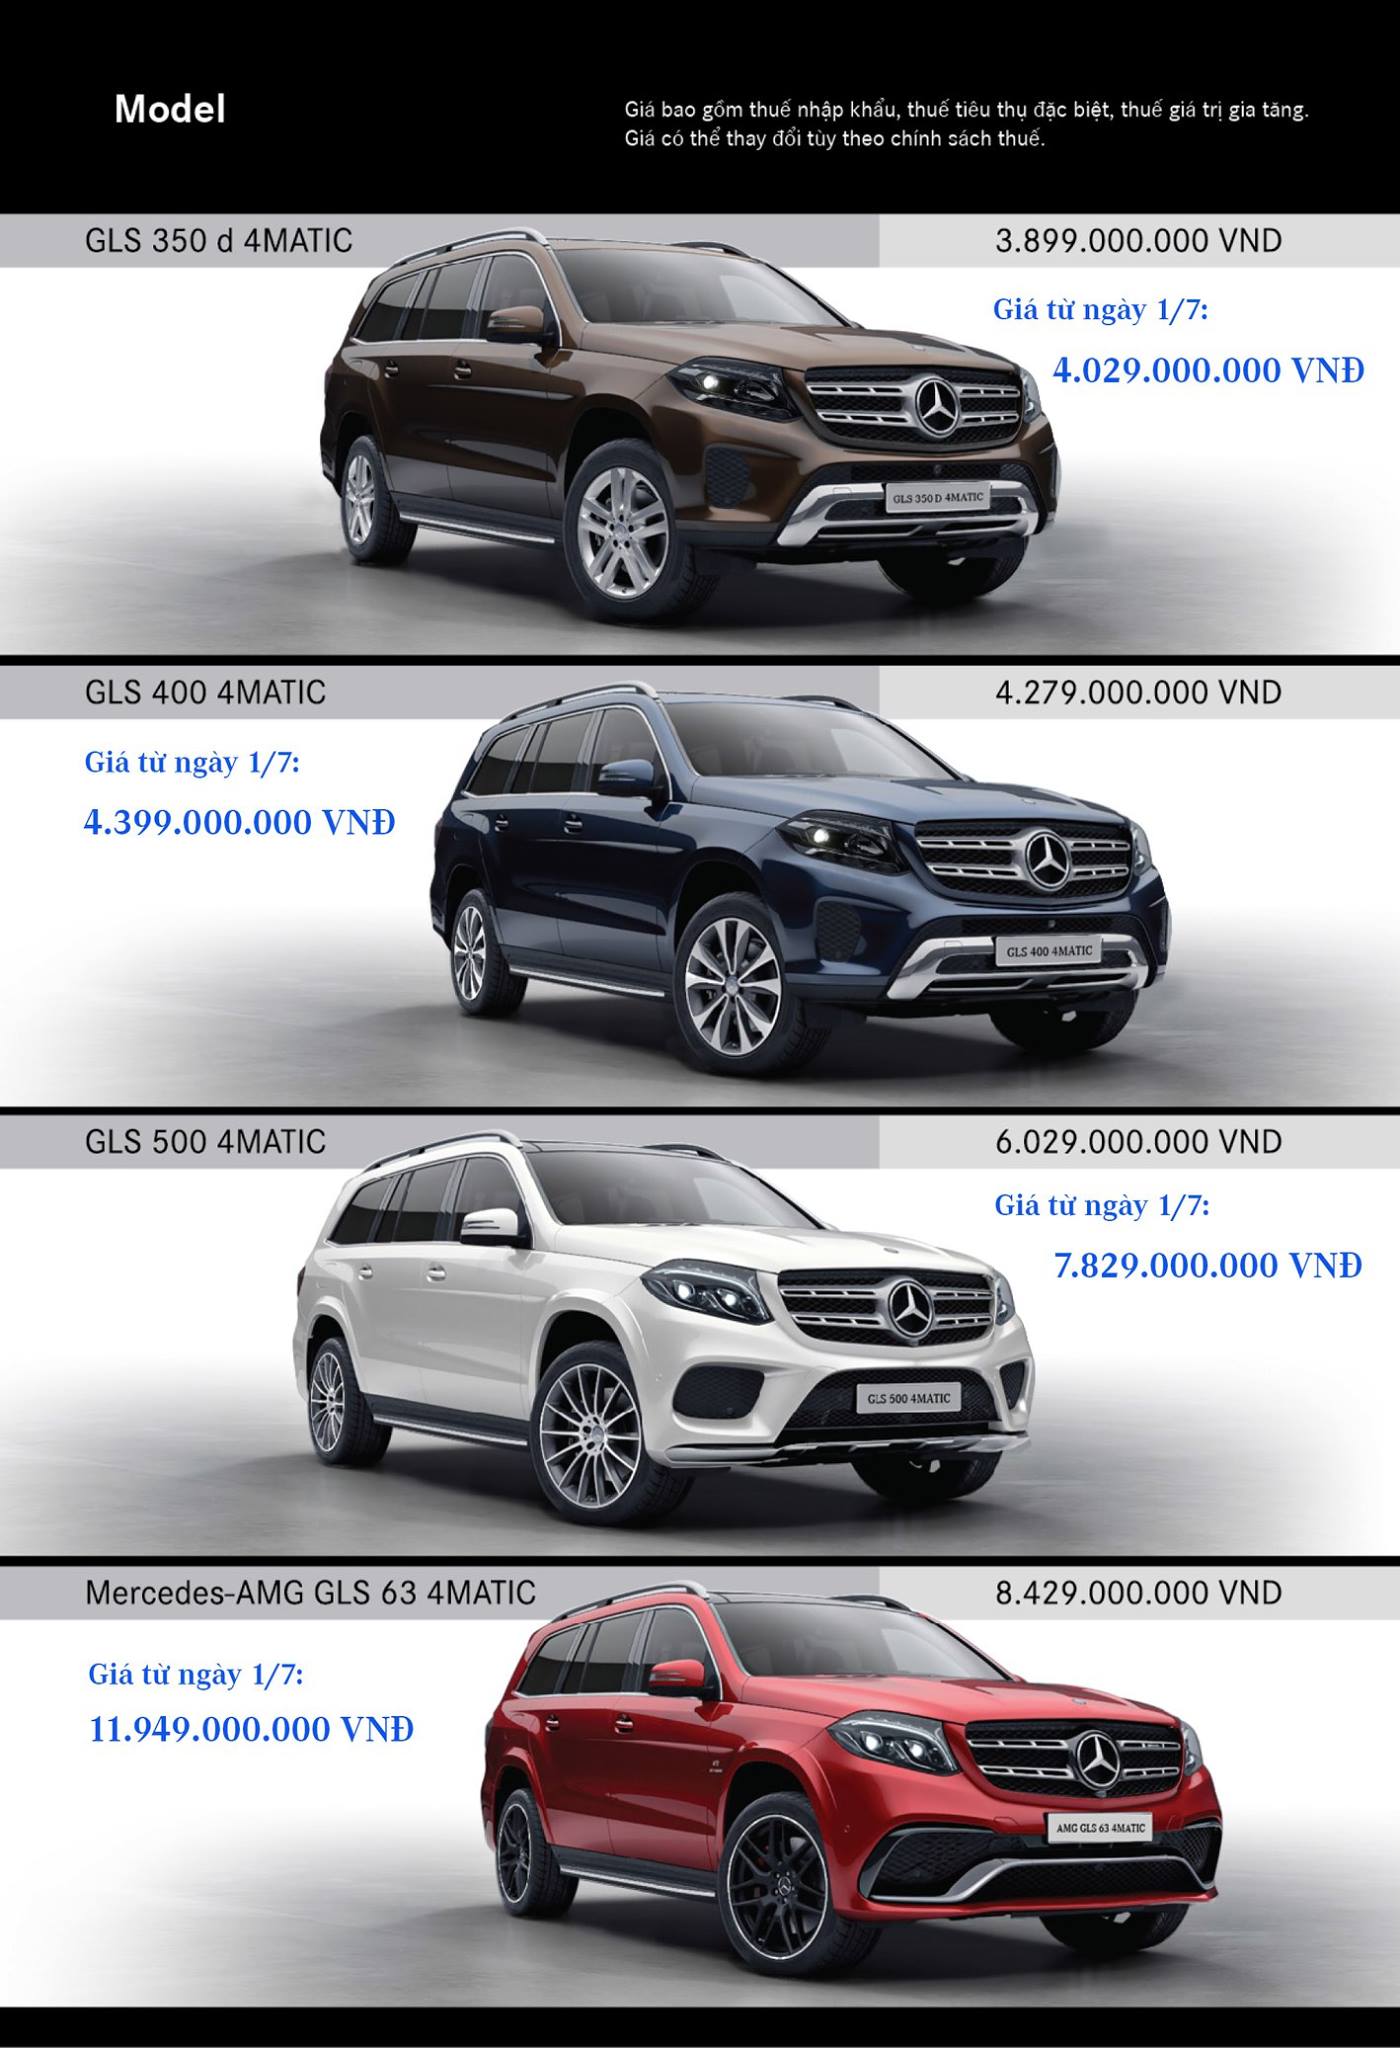 Giá xe Mercedes-Benz tại Việt Nam sắp “leo thang” vì thuế